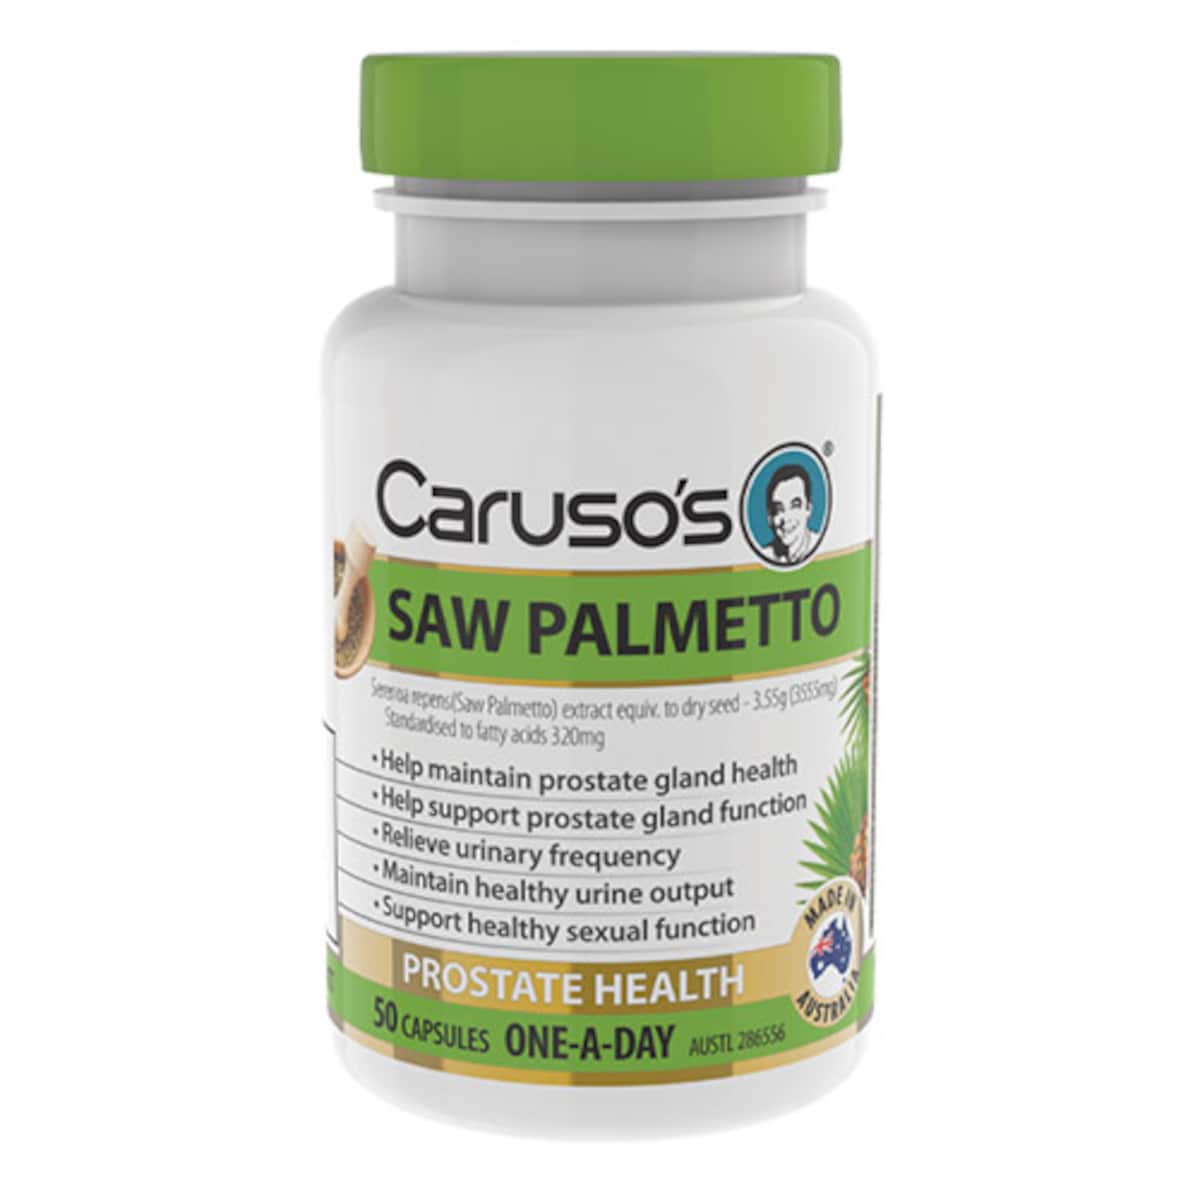 Carusos Saw Palmetto Prostate Health 50 Capsules